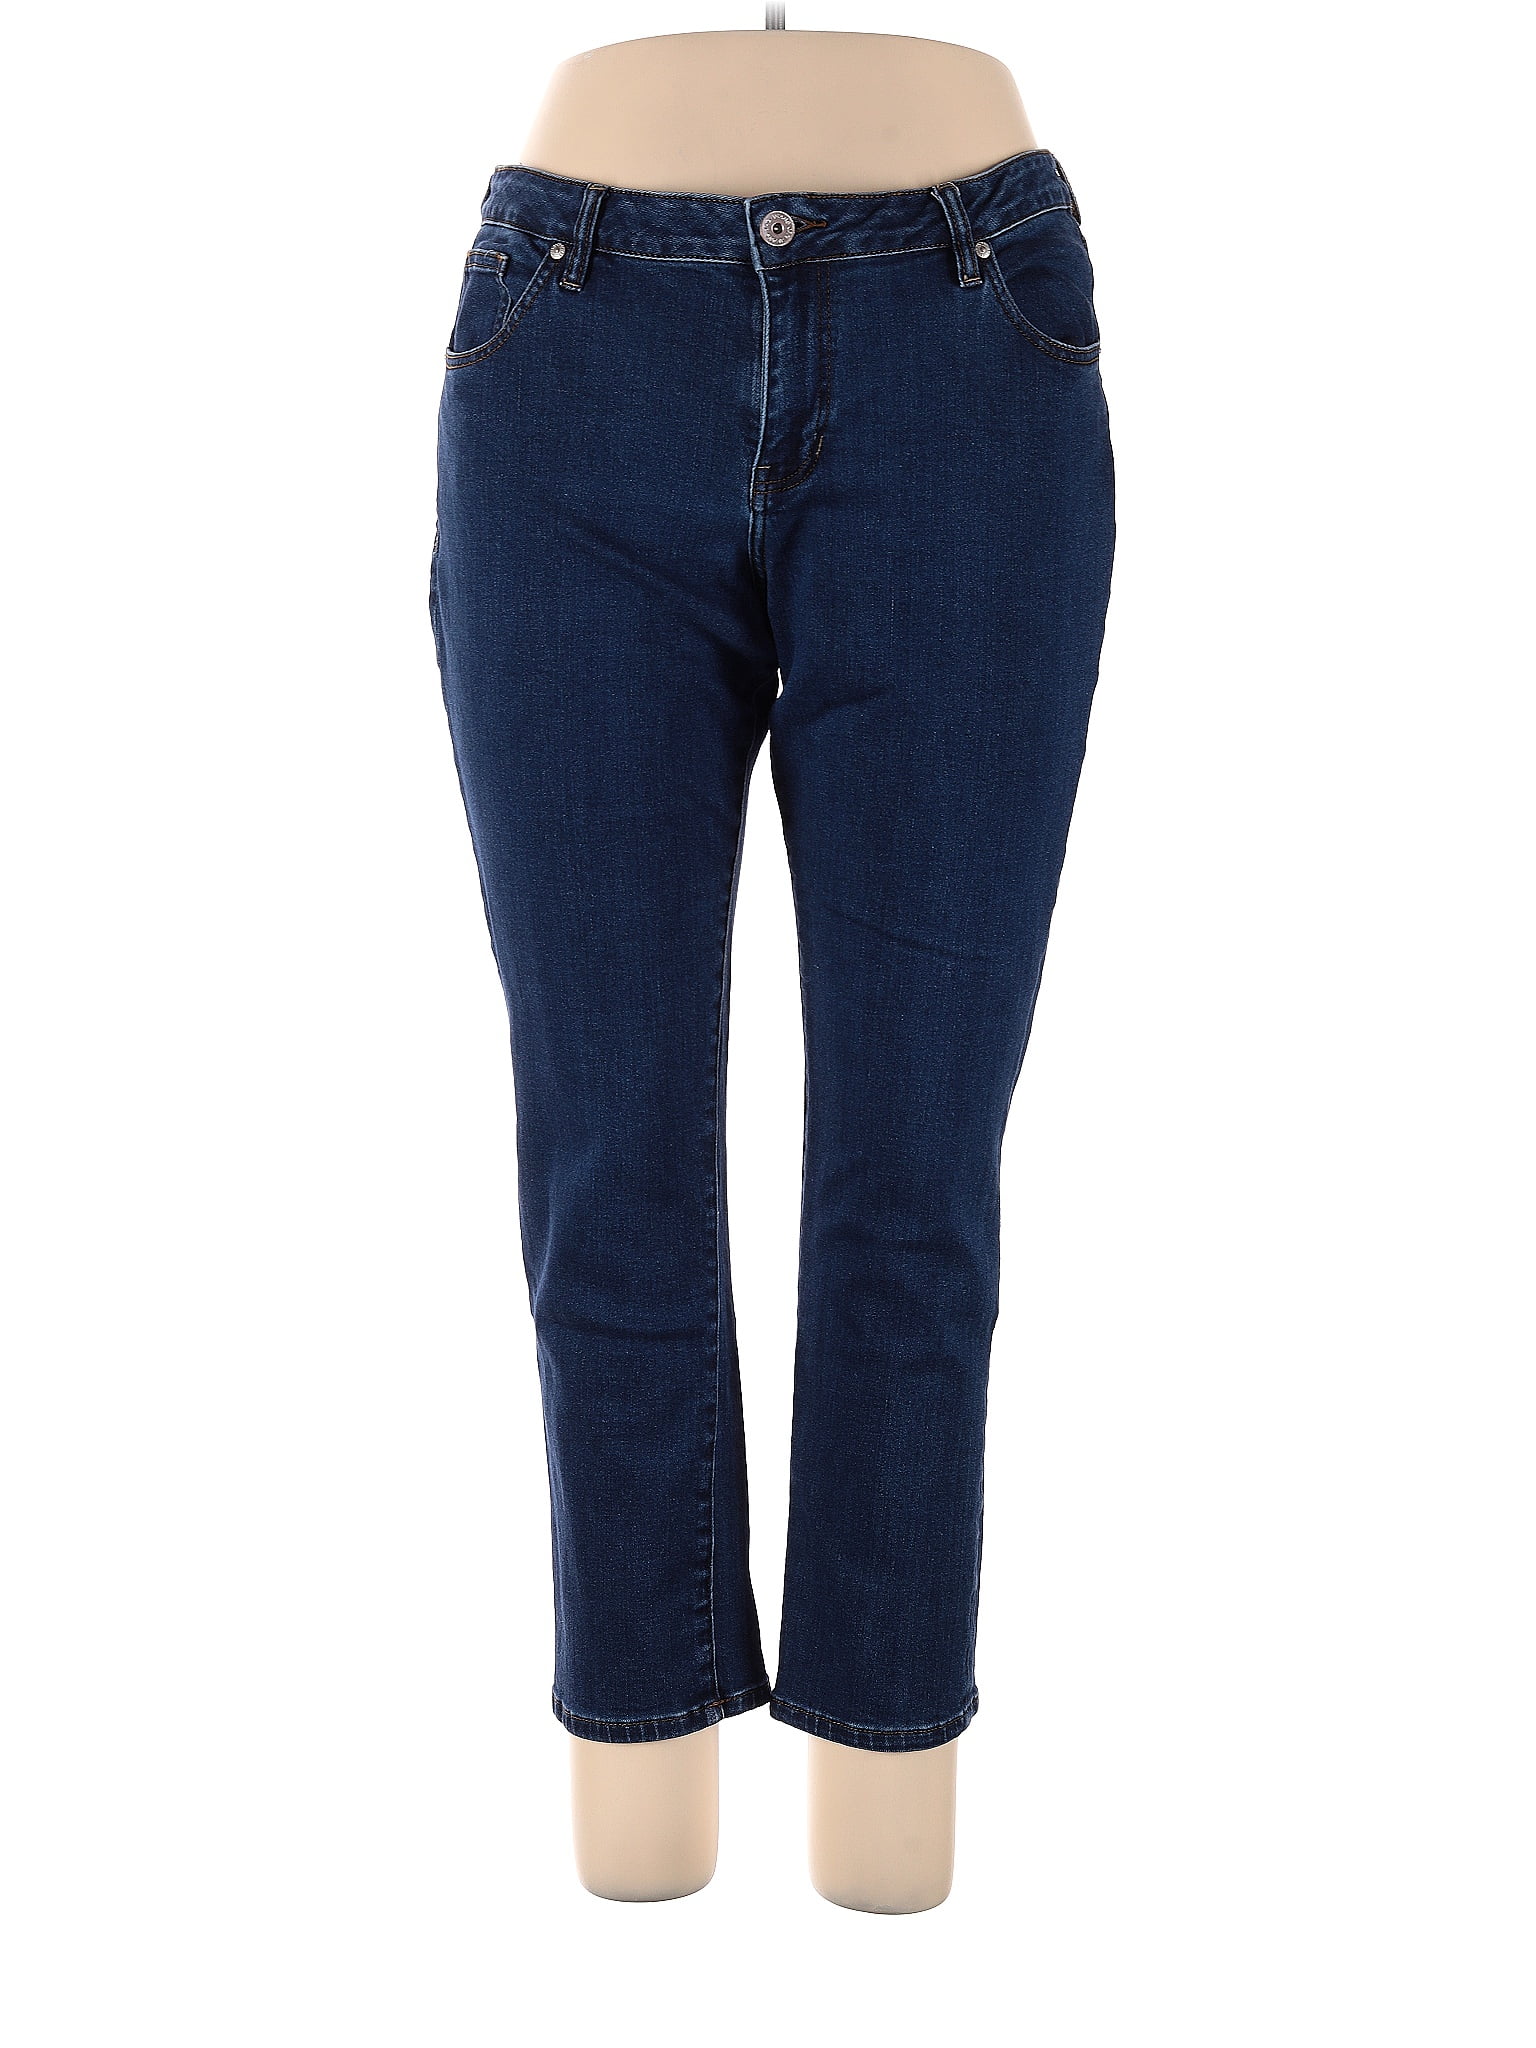 Jag Jeans Solid Blue Jeans Size 16 - 71% off | ThredUp